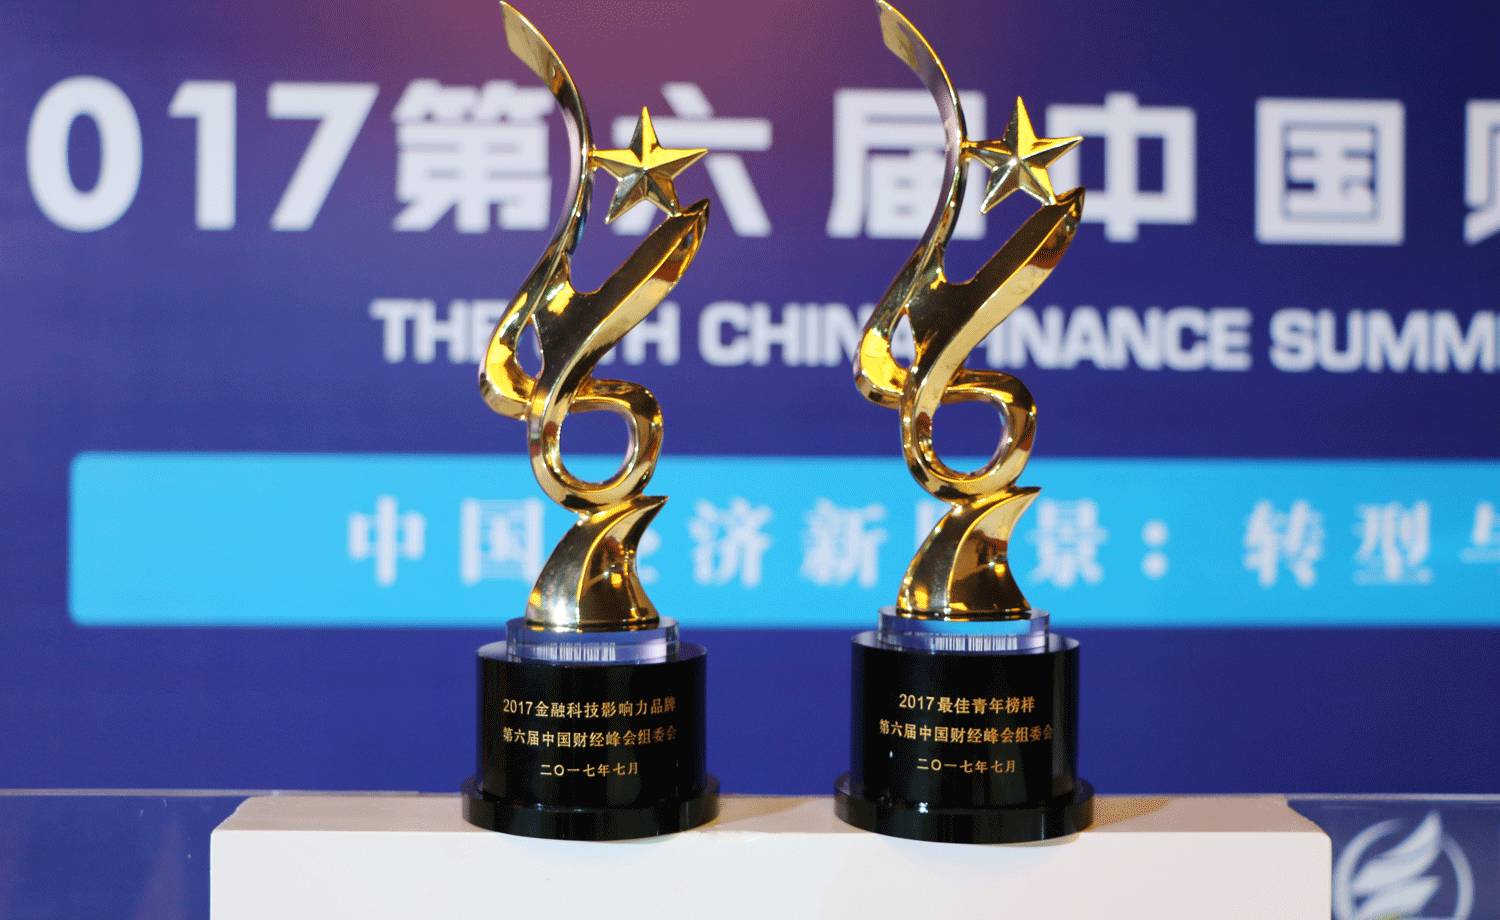 喜讯 | 团贷网获第六届中国财经峰会